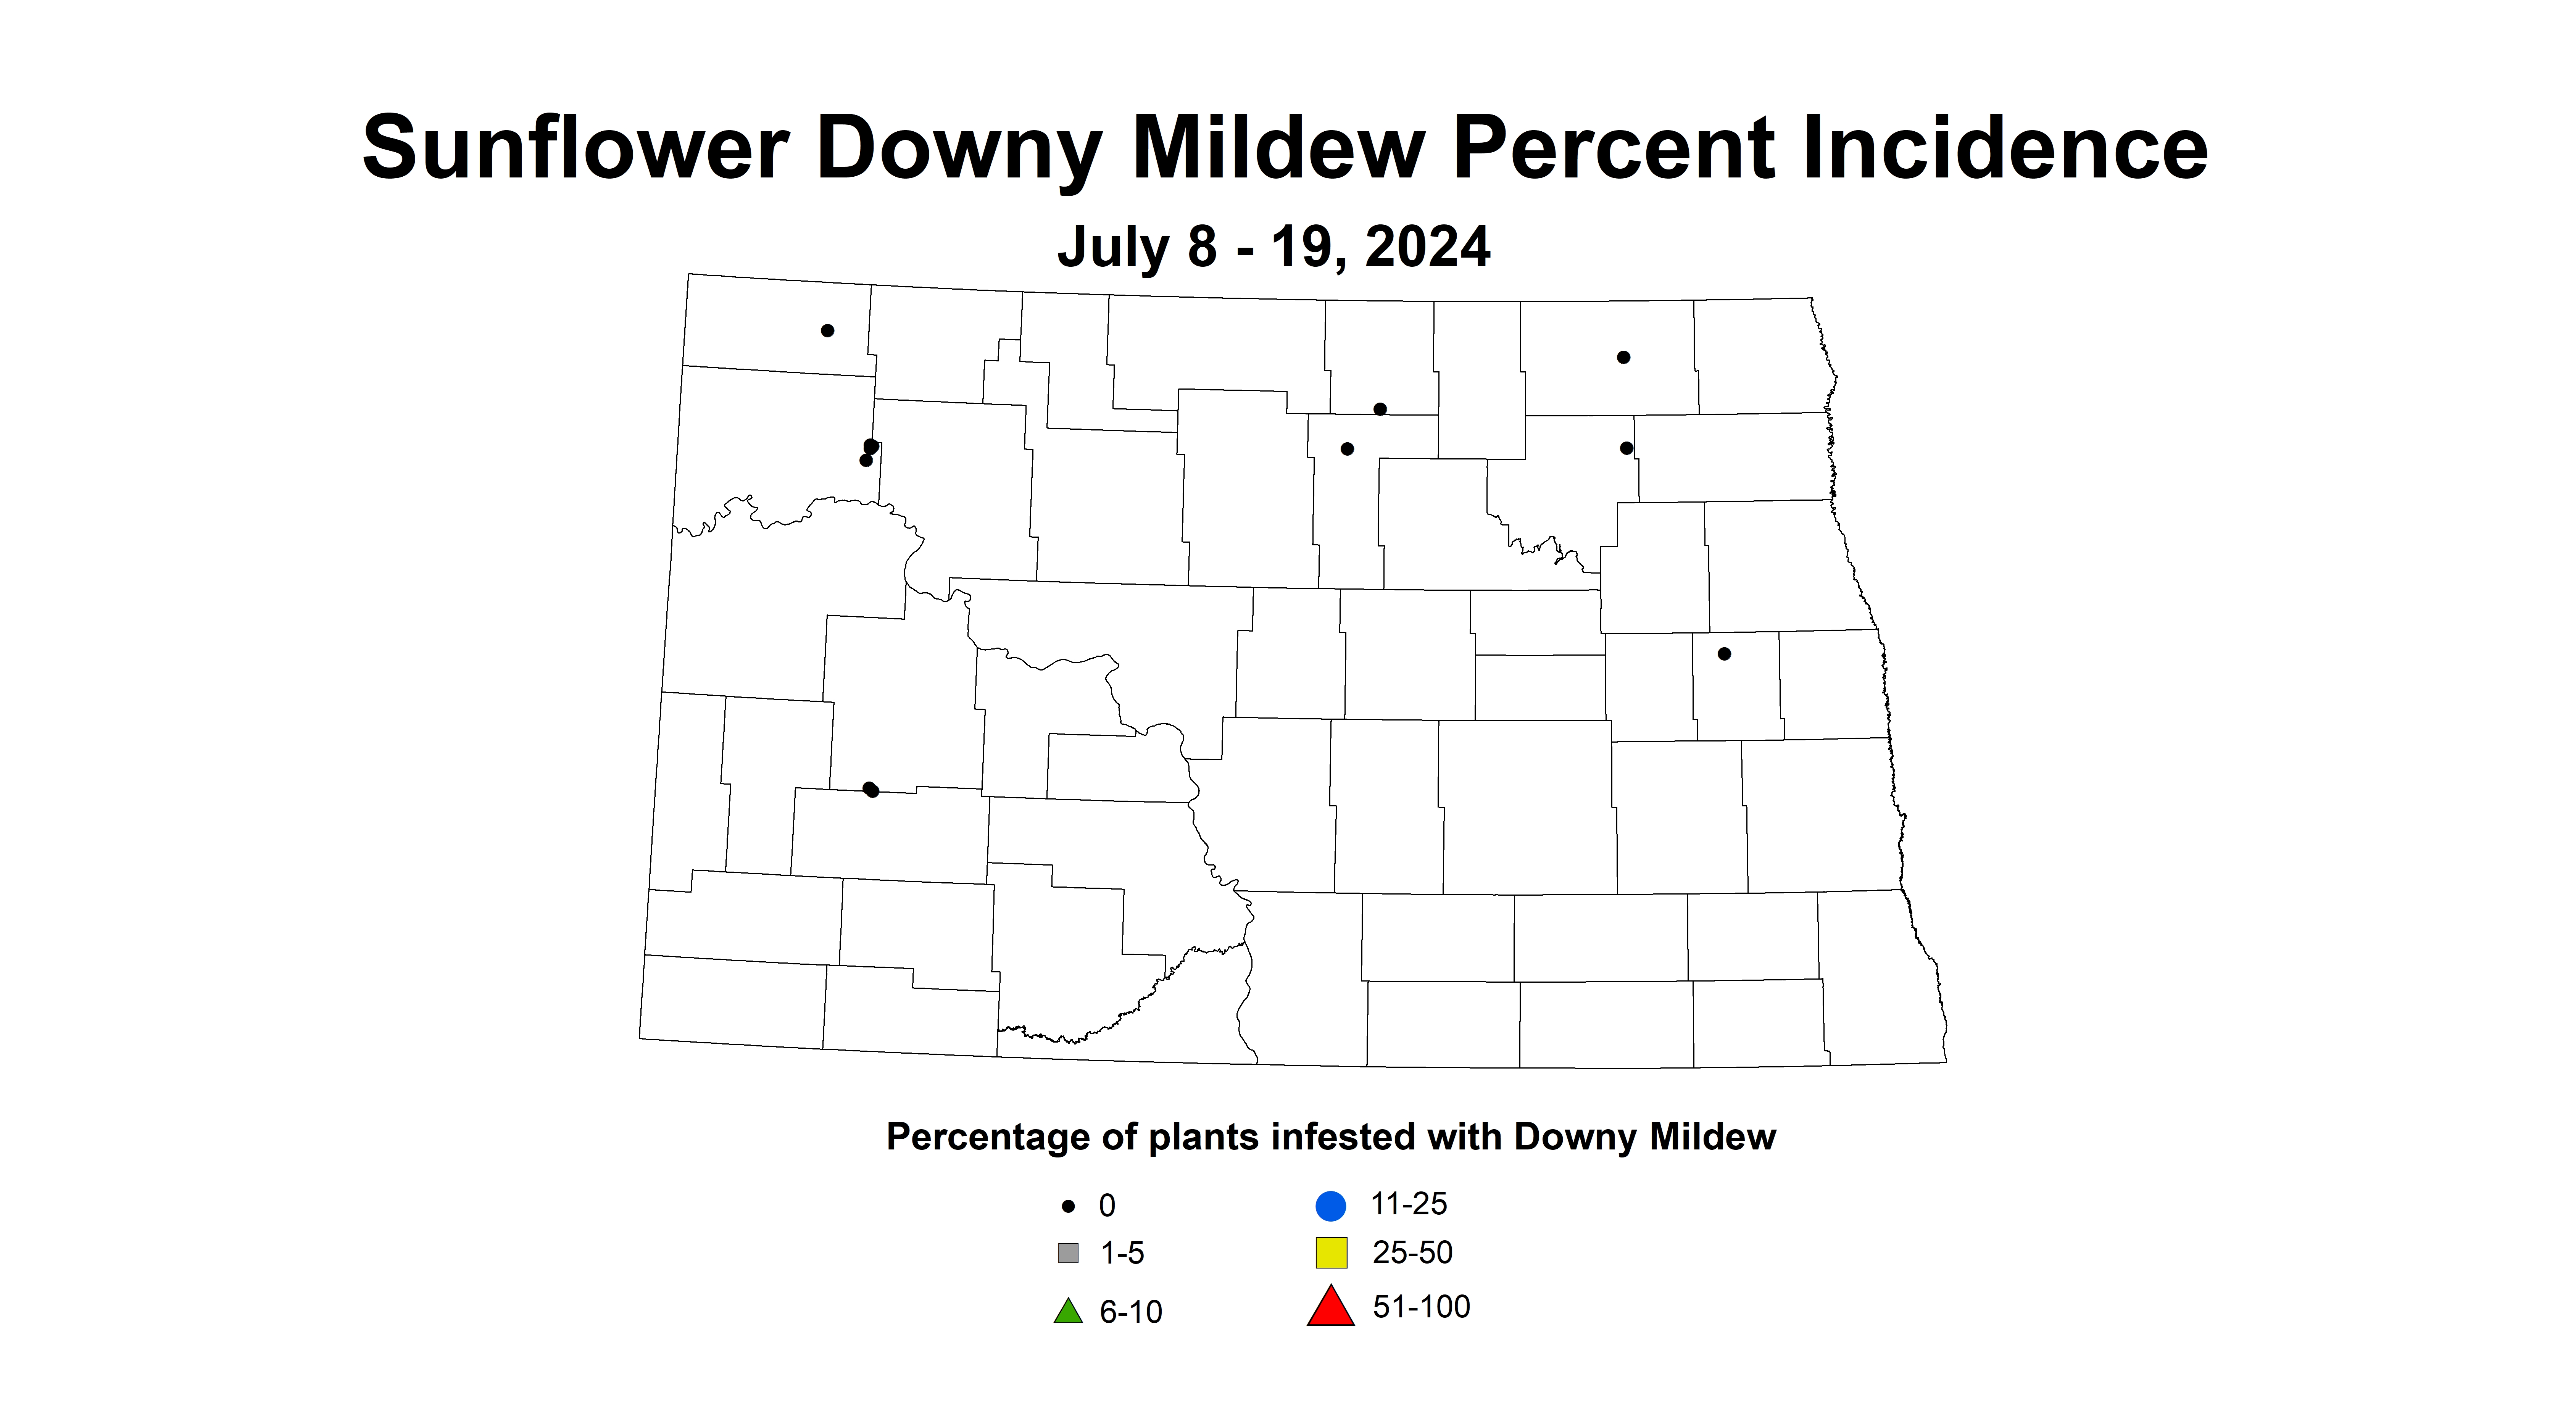 sunflower downy mildew July 8 - 19 2024